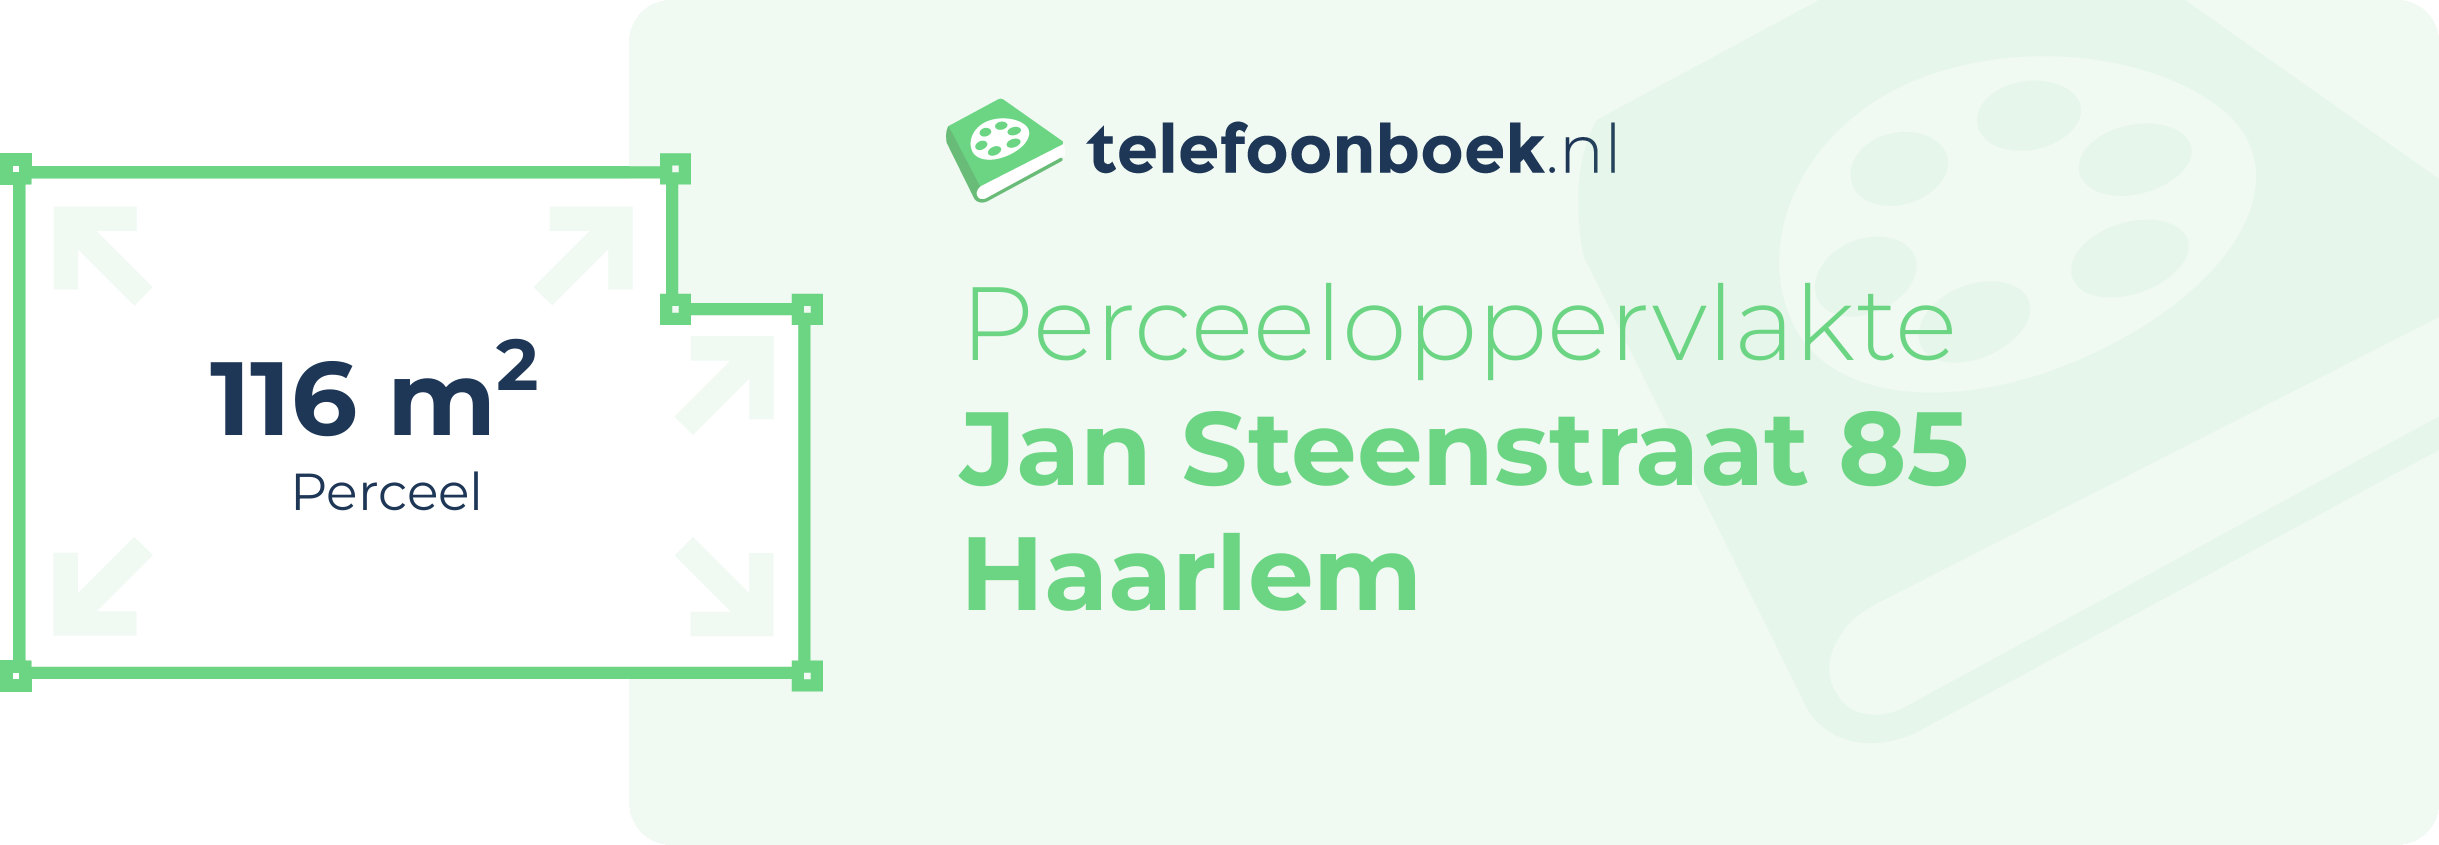 Perceeloppervlakte Jan Steenstraat 85 Haarlem